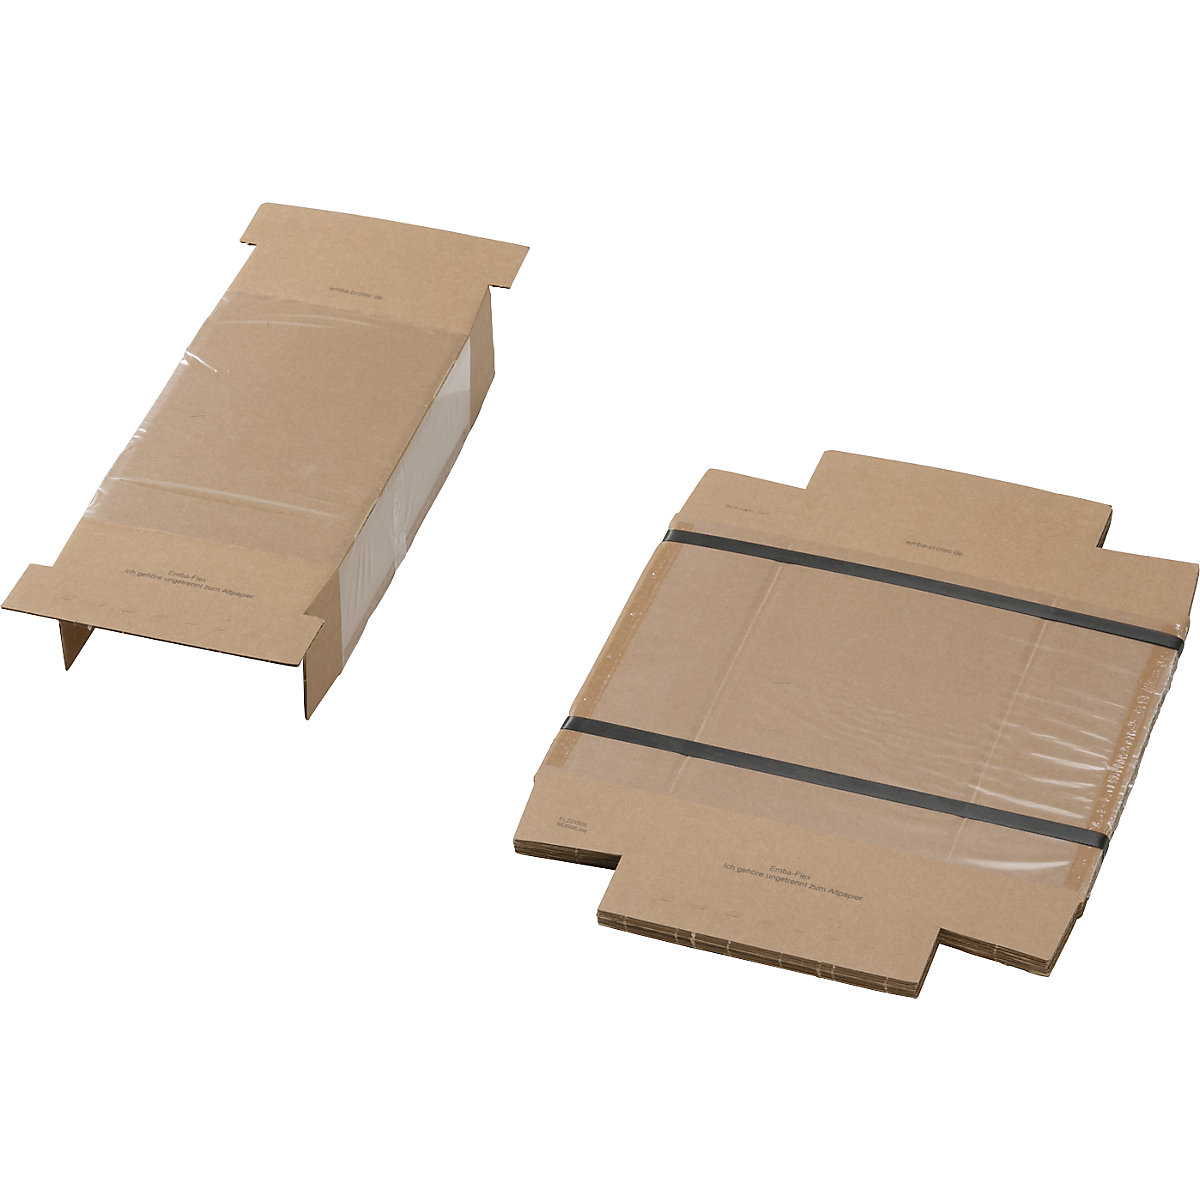 Emballage à fixation, avec dispositif de fixation et carton d'emballage, lot de 25, pour dim. des marchandises emballées: L x l x h 220 x 150 x 80 mm-1